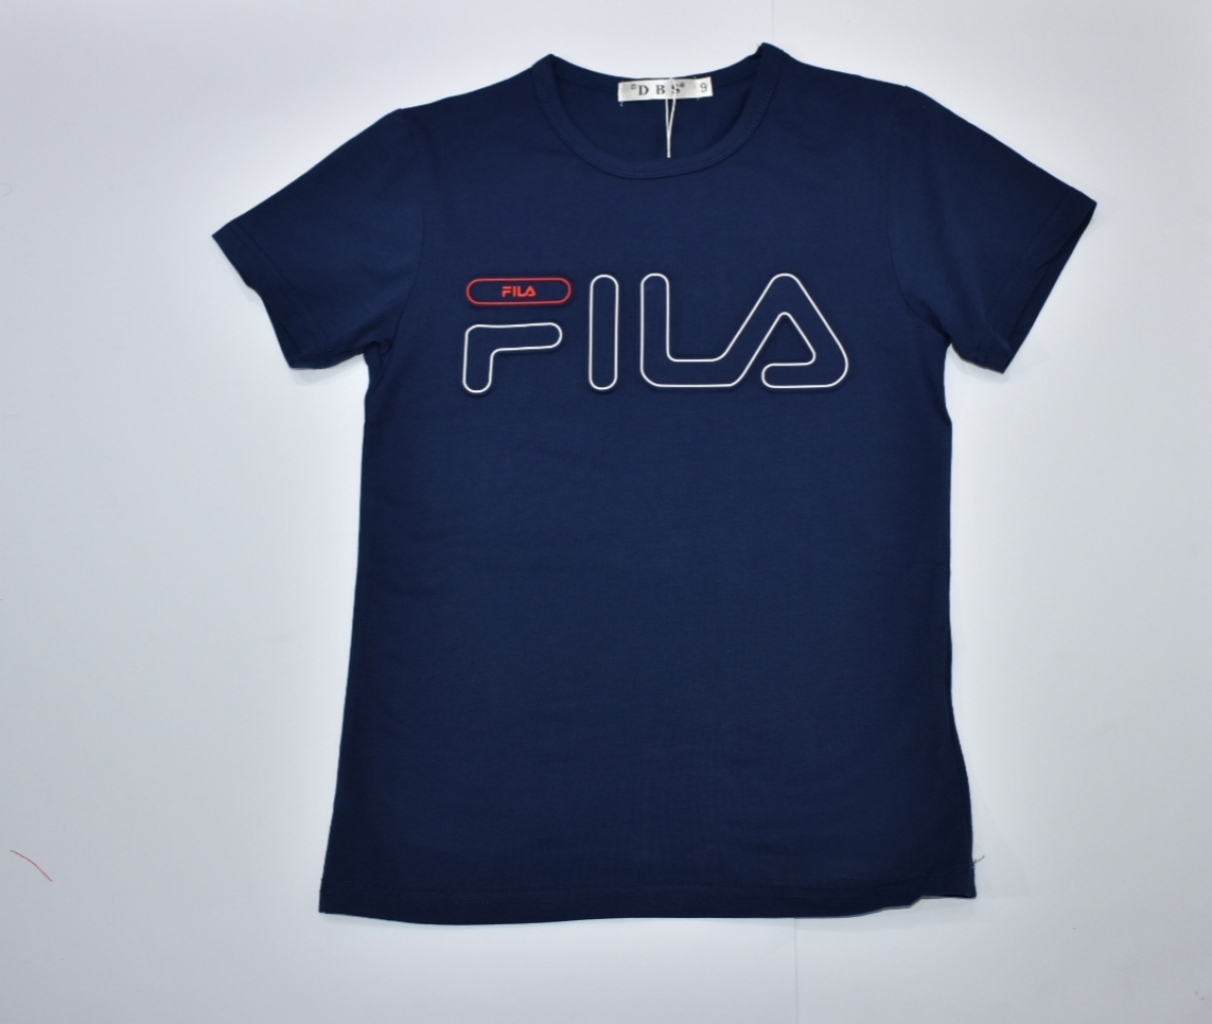 Buy Fila Blue T-Shirt in Pakistan | online shopping in Pakistan